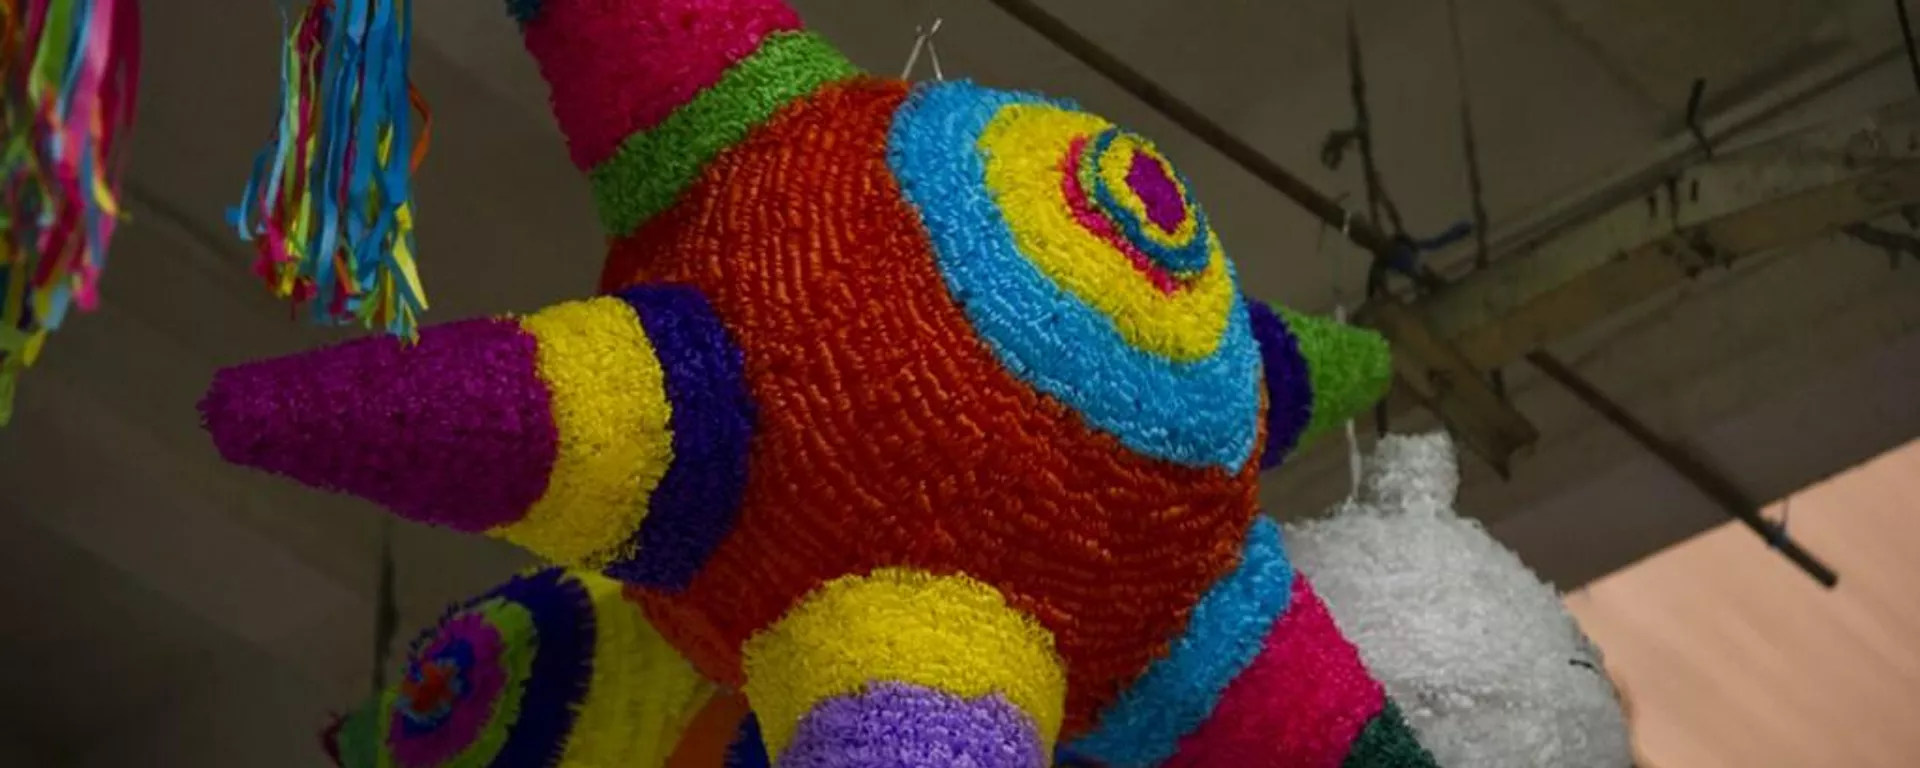 La coloridas piñatas son una tradición en México  - Sputnik Mundo, 1920, 11.12.2021